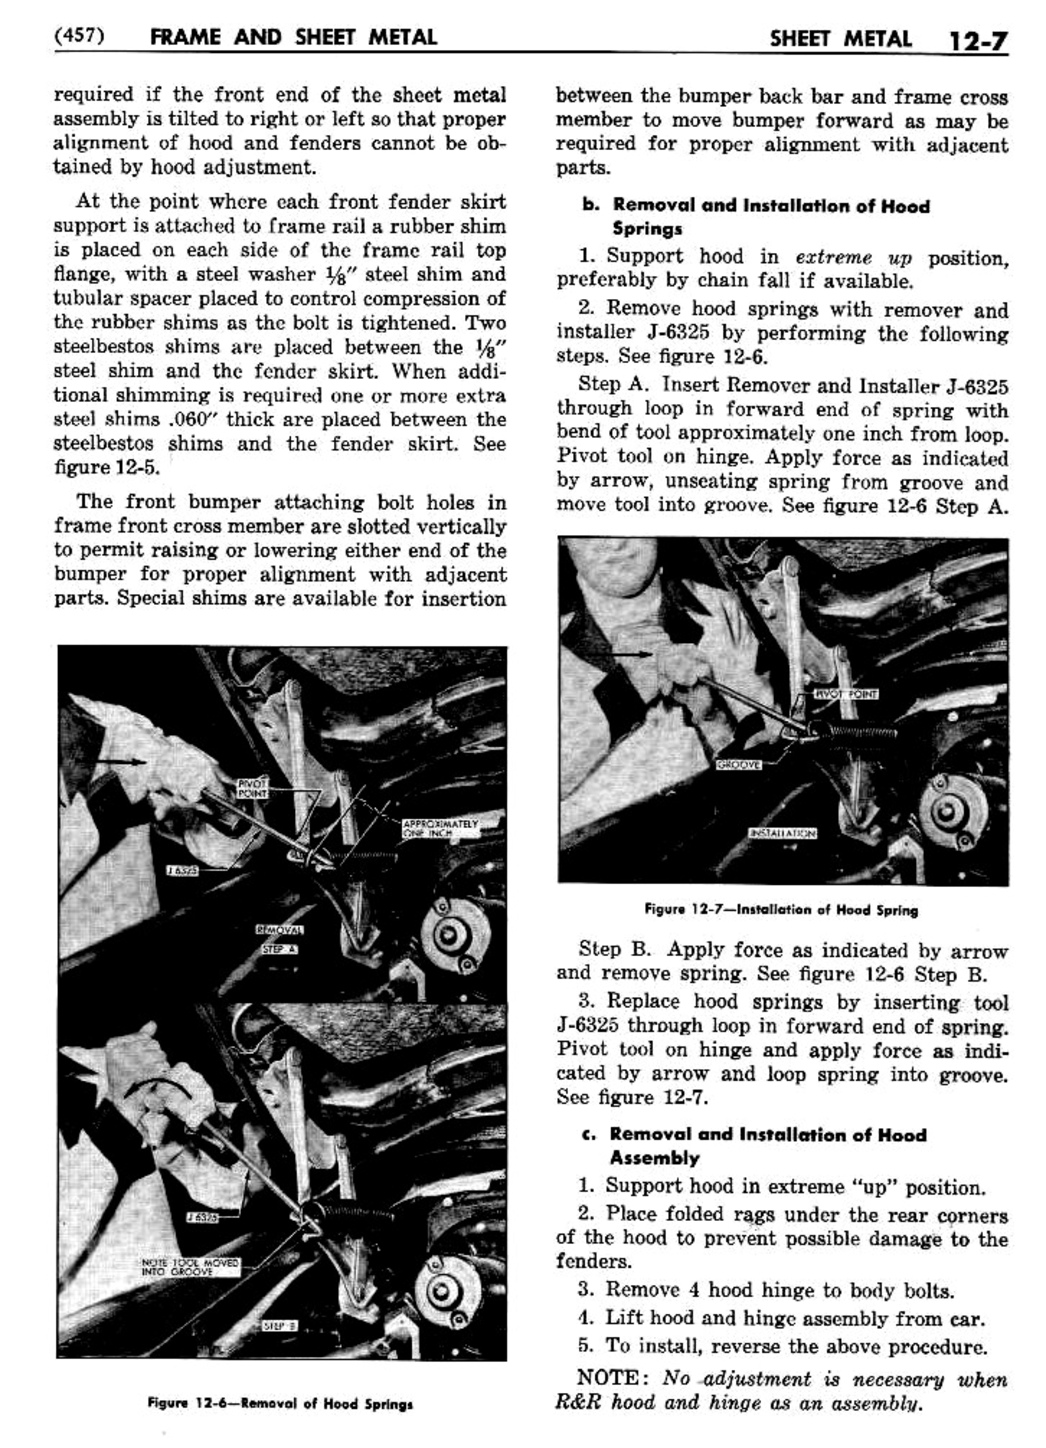 n_13 1956 Buick Shop Manual - Frame & Sheet Metal-007-007.jpg